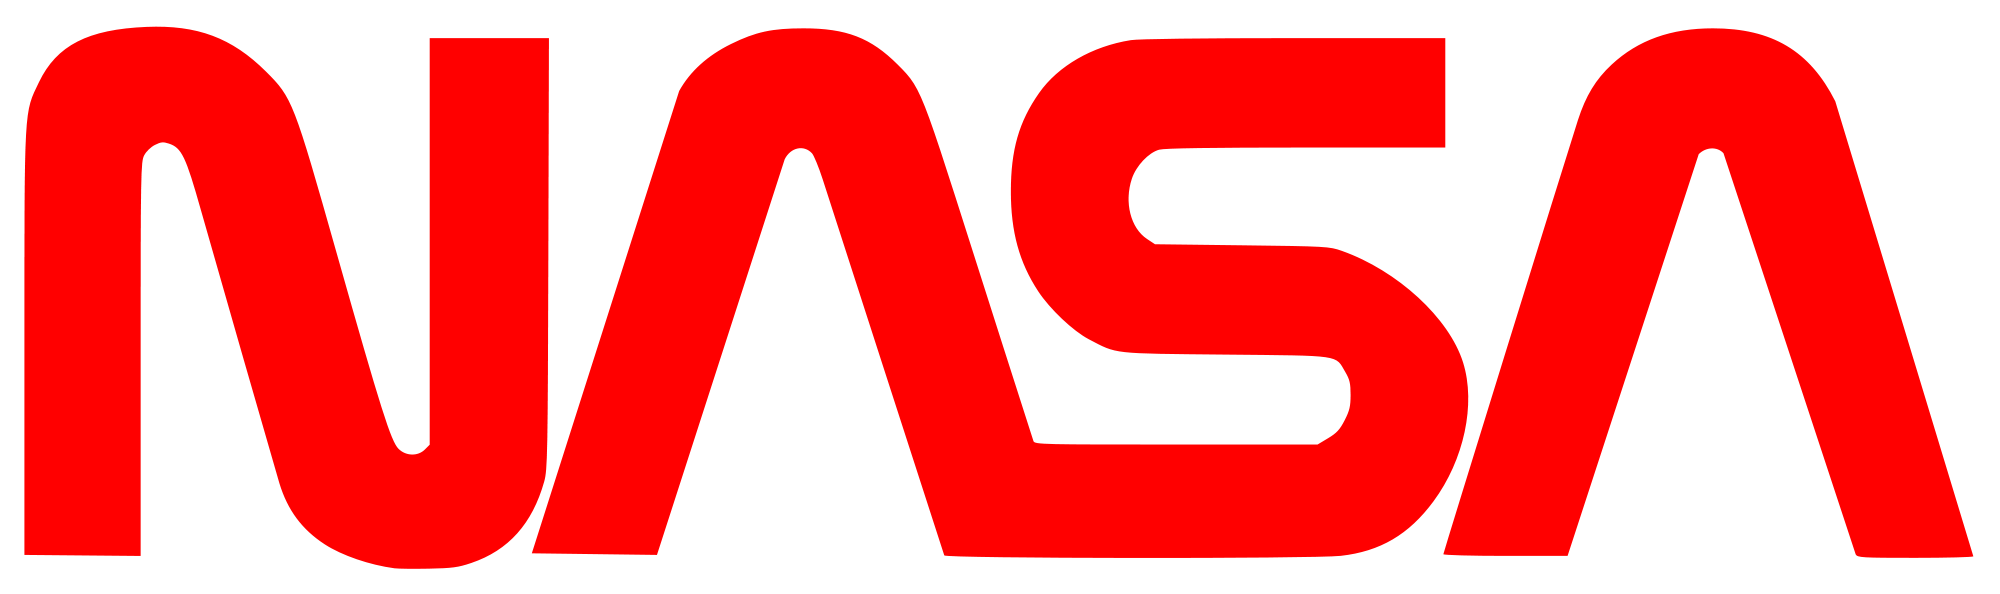 NASA Vector Logo - Best Free Naca Nasa Logos Decals Vector Photo